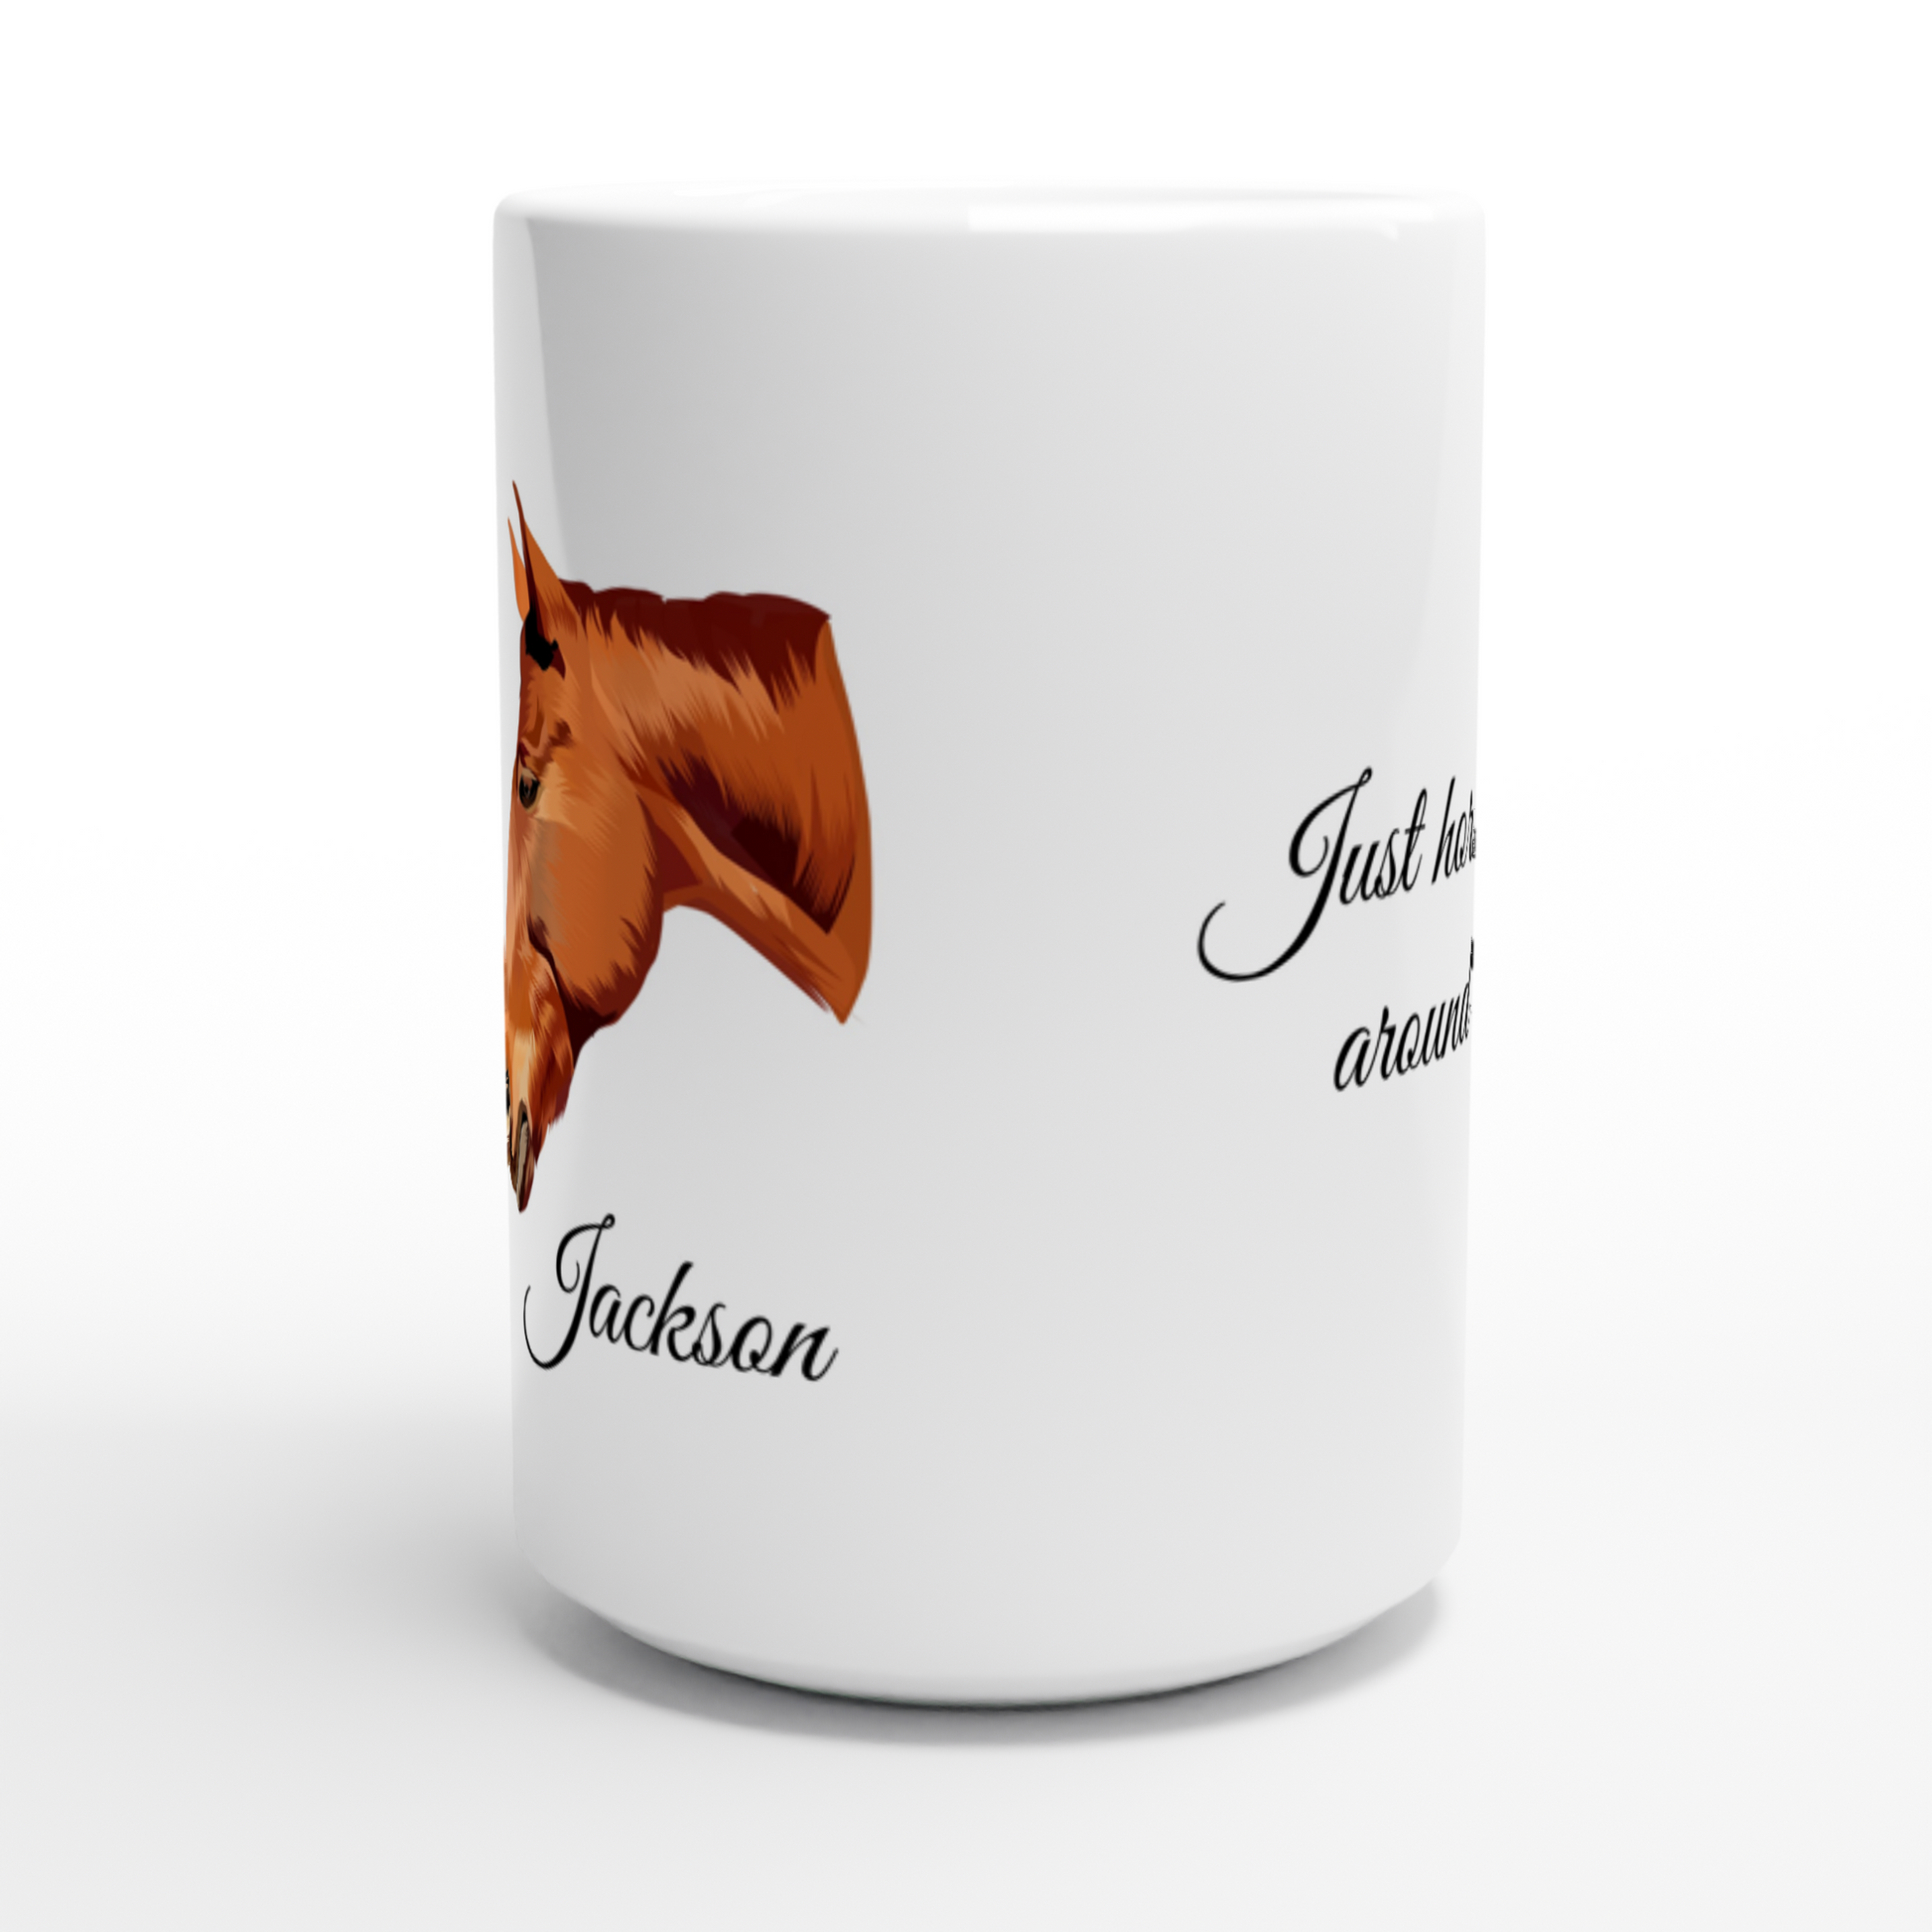 Hand Drawn Horse || 15oz Ceramic Mug - TruPaint - Personalized; Hand drawn & personalized with your horse